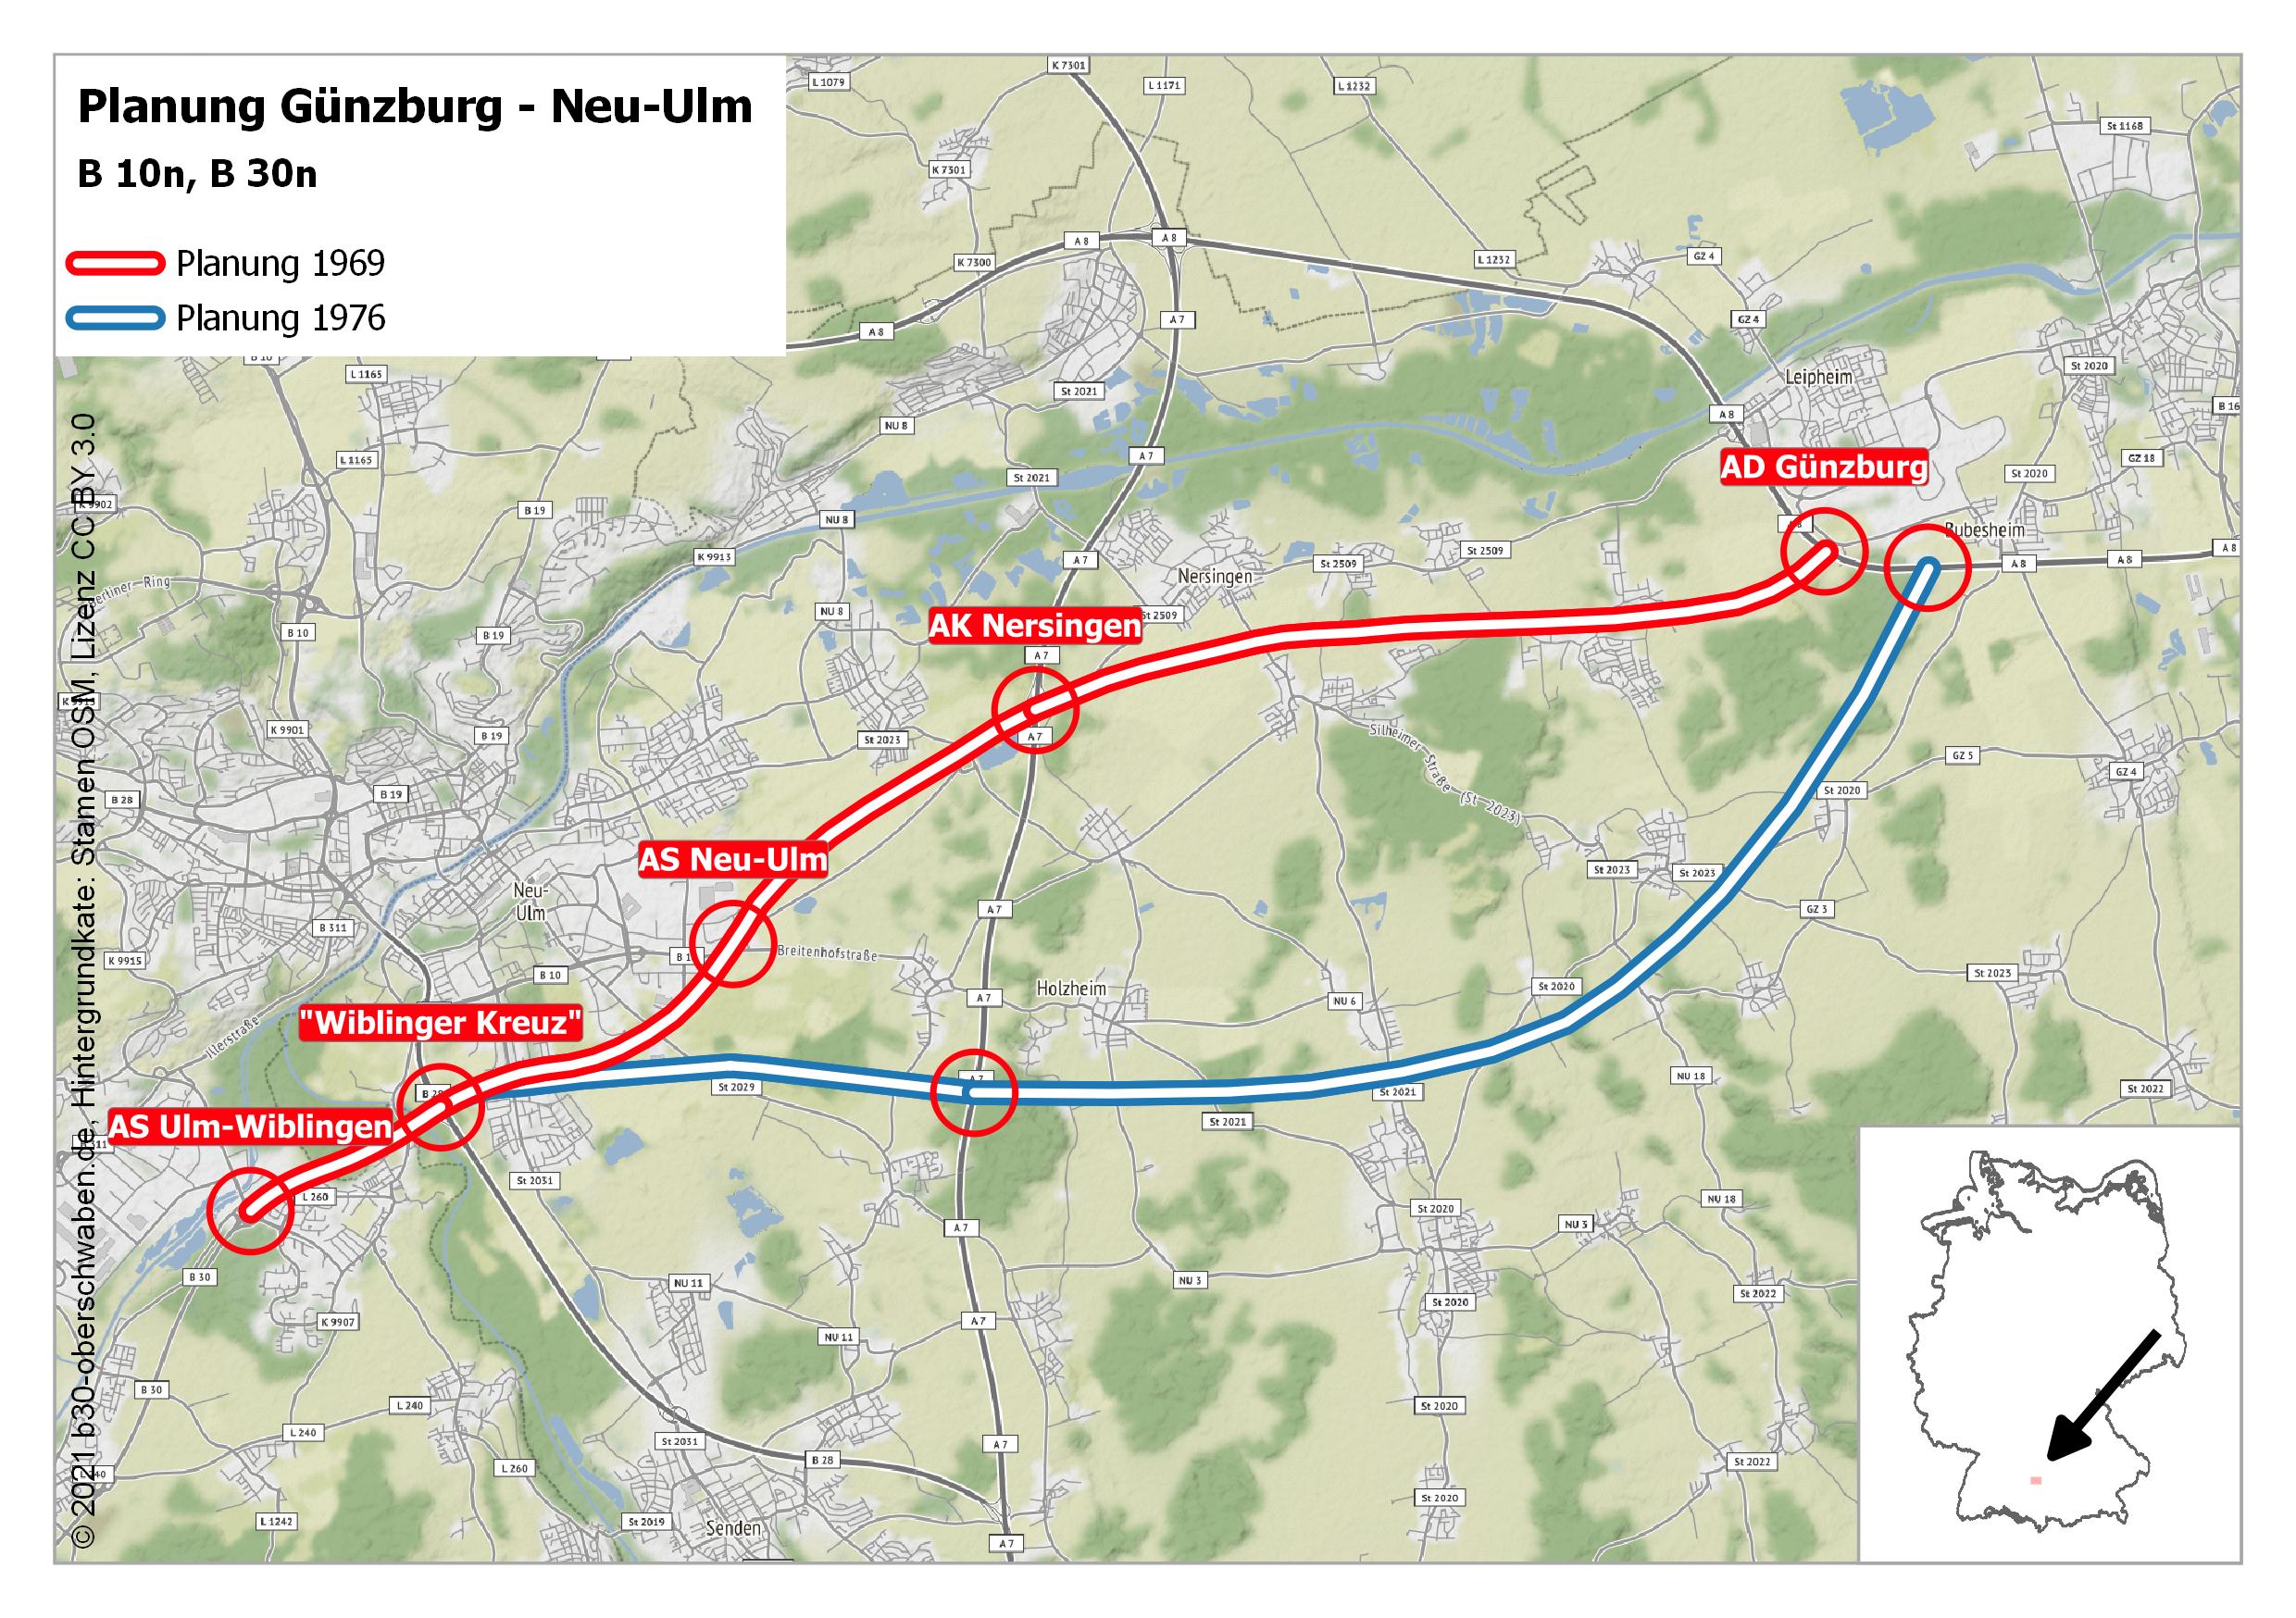 Planung Günzburg - Neu-Ulm